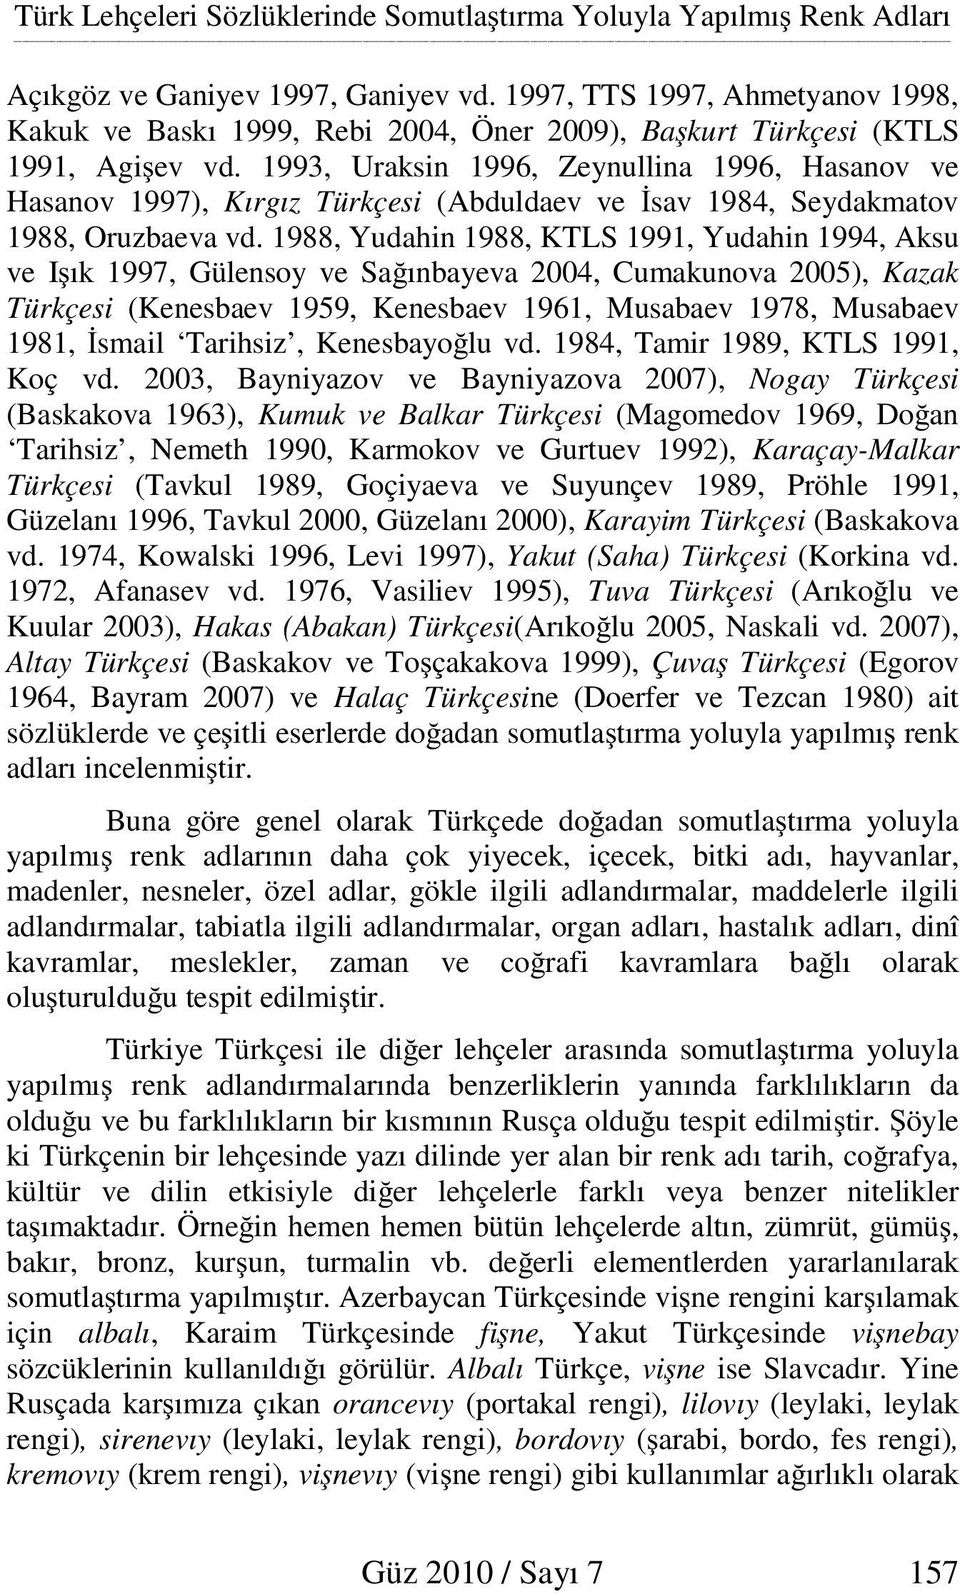 1993, Uraksin 1996, Zeynullina 1996, Hasanov ve Hasanov 1997), Kırgız Türkçesi (Abduldaev ve sav 1984, Seydakmatov 1988, Oruzbaeva vd.